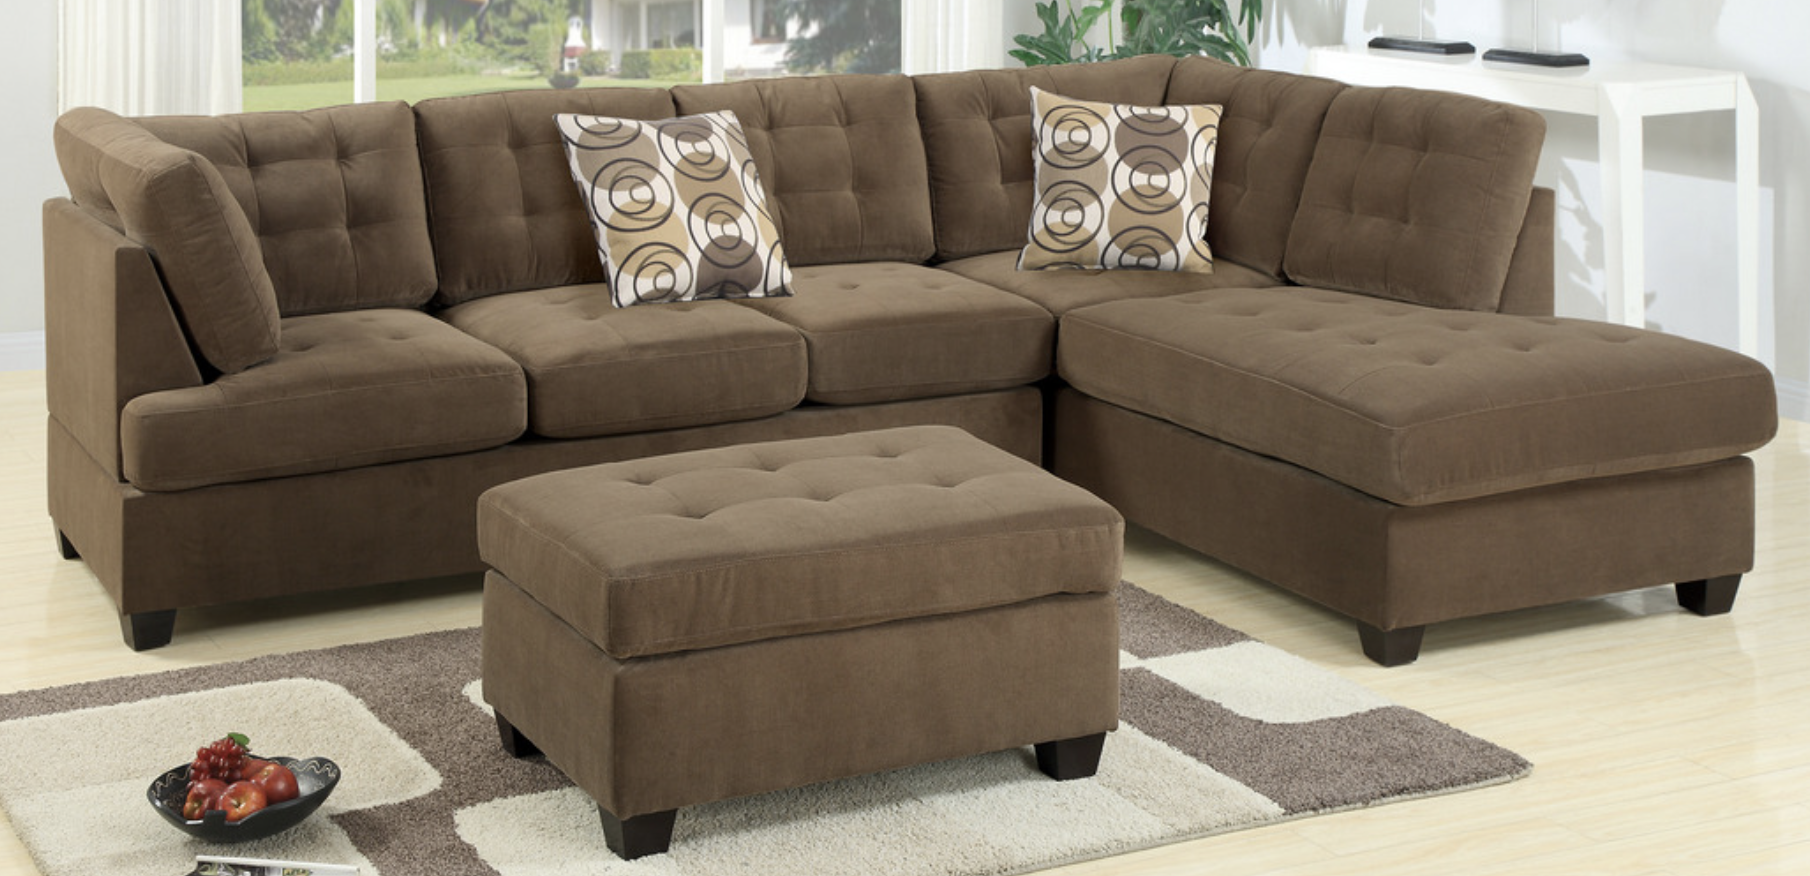 Купить мебель антивандальная. Флок BH 211. Антивандальные ткани для дивана. Мебельный материал для мягкой мебели антивандальный. Диван угловой антивандальная ткань.